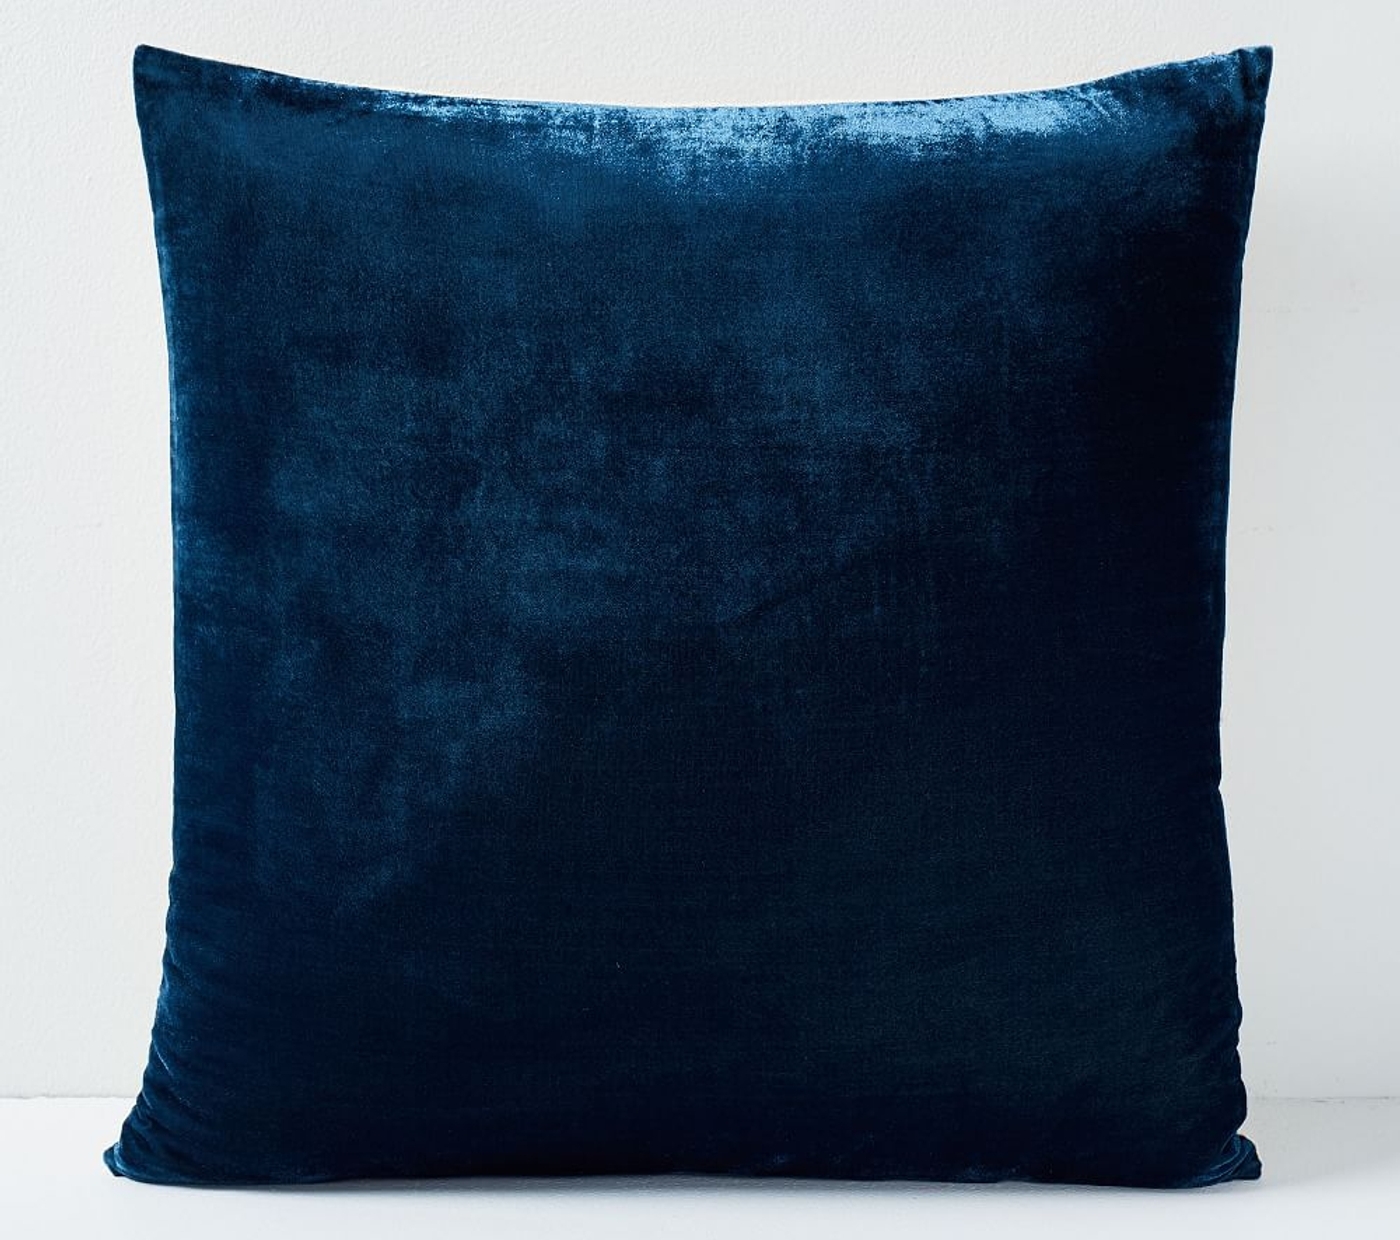 Lush Velvet Pillow Covers, Regal Blue